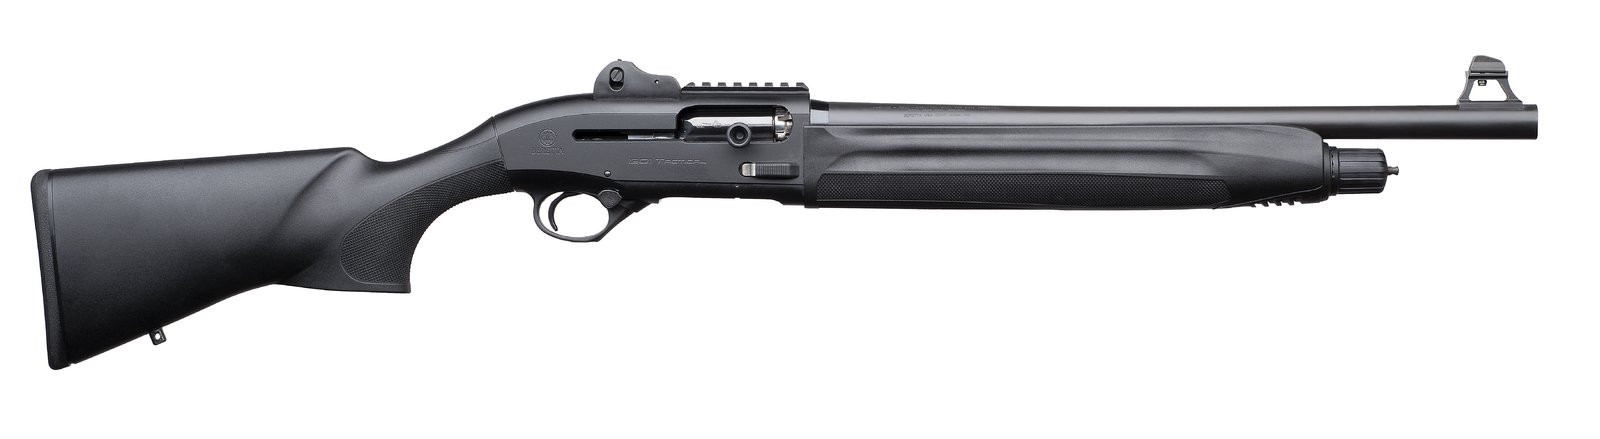 Beretta 1301 Tactical black, brokovnice samonabíjecí, .12/76 mm